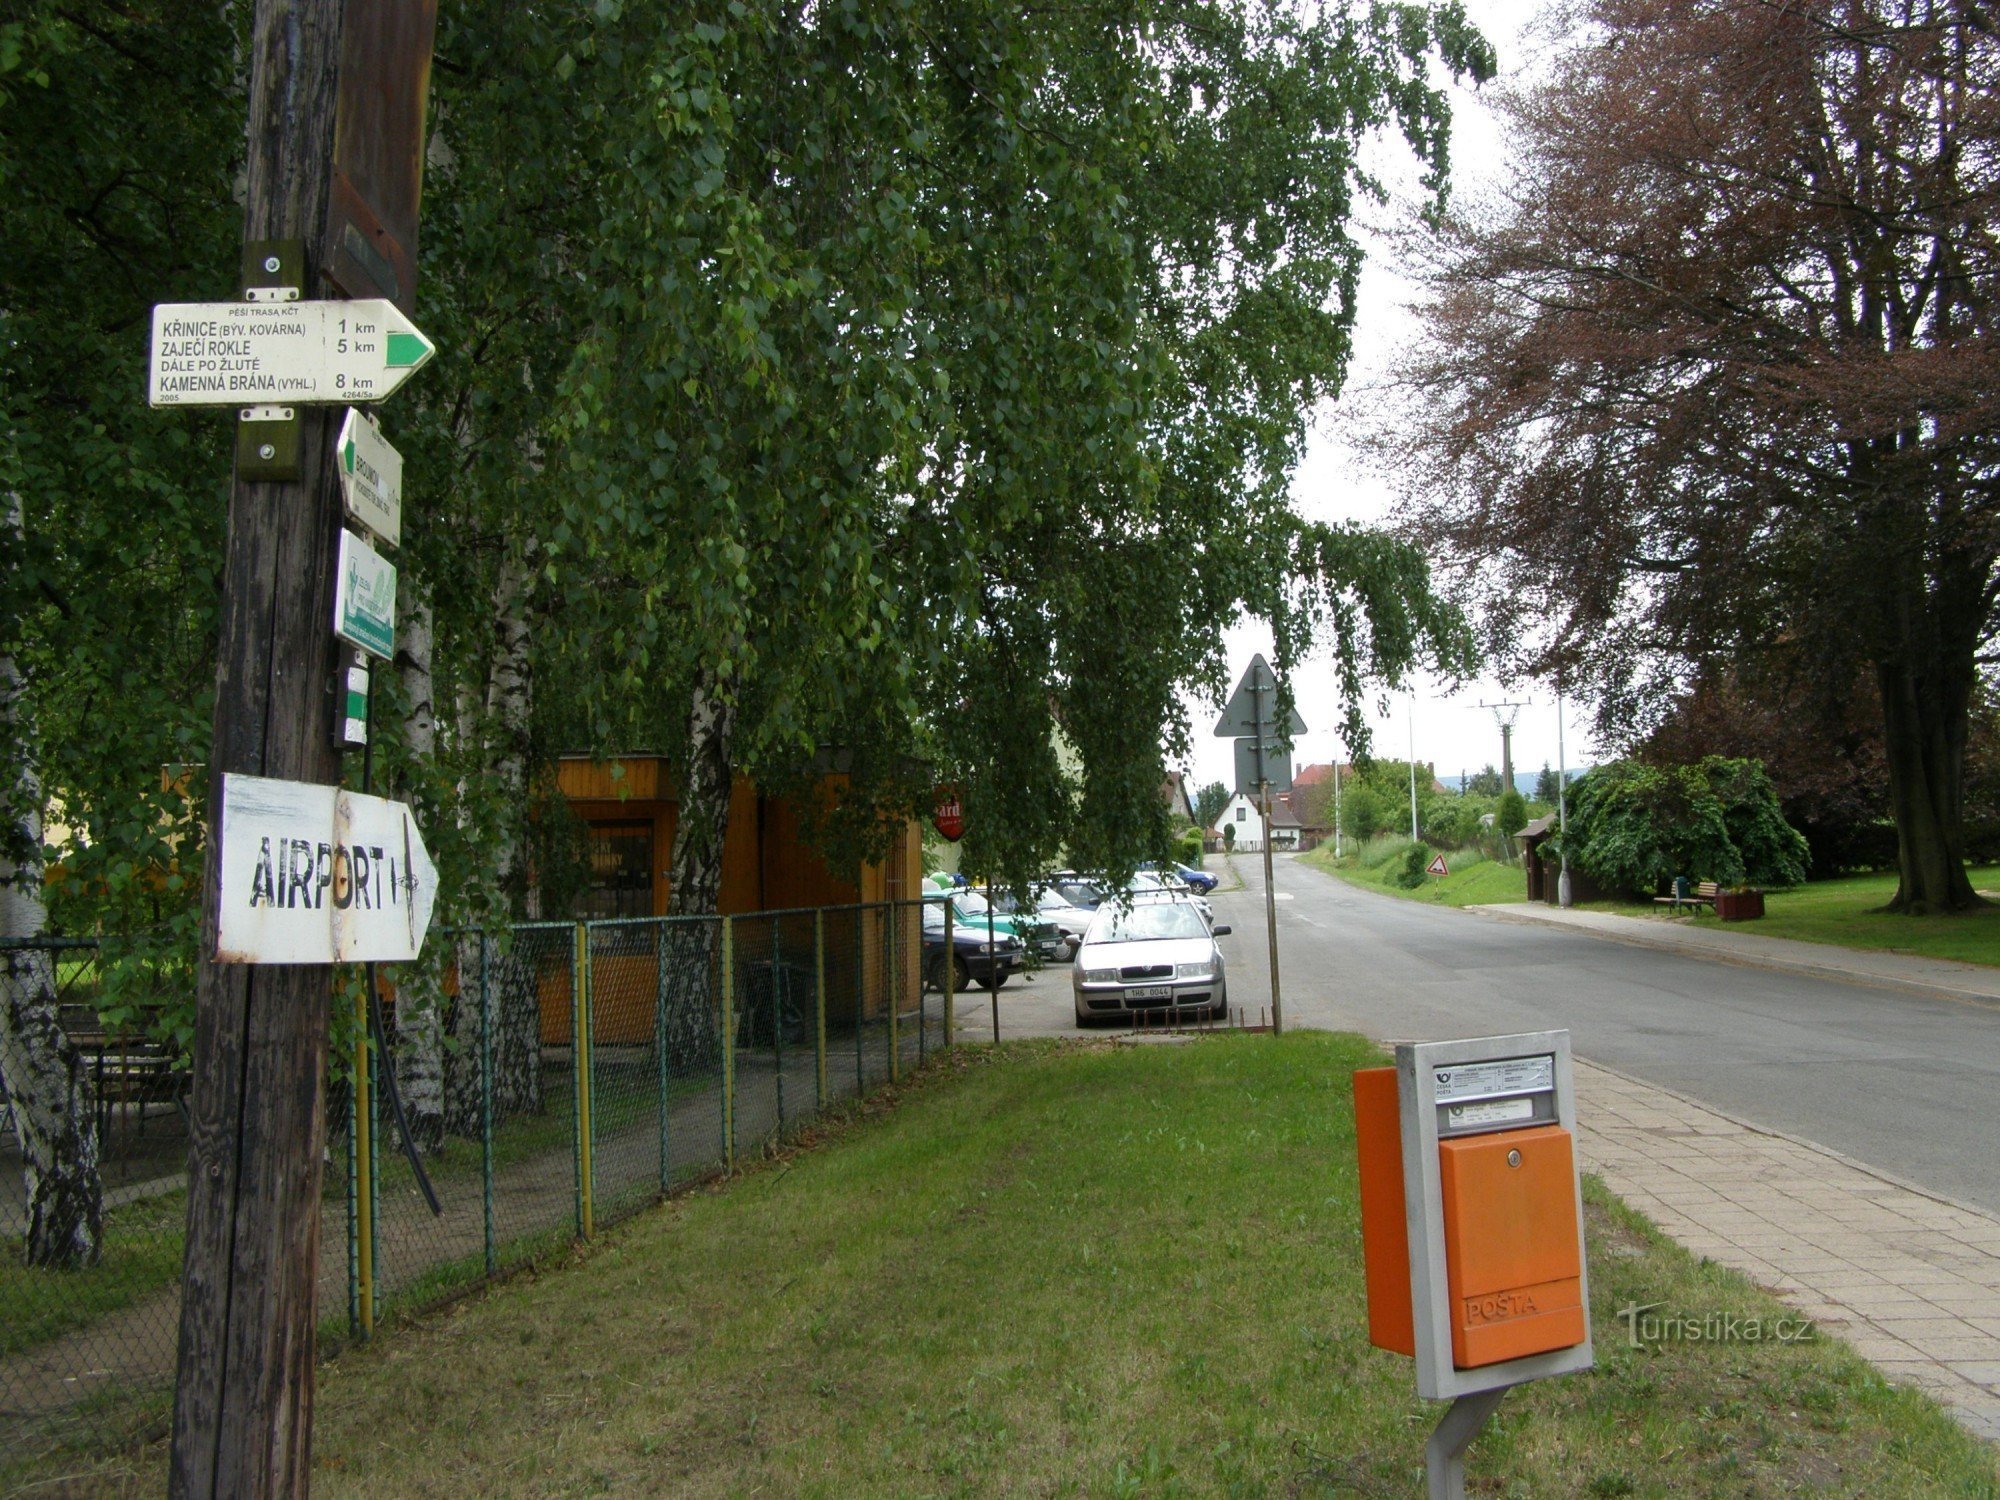 toeristisch kruispunt Broumov - vlakbij de houten kerk (nabij het ziekenhuis)